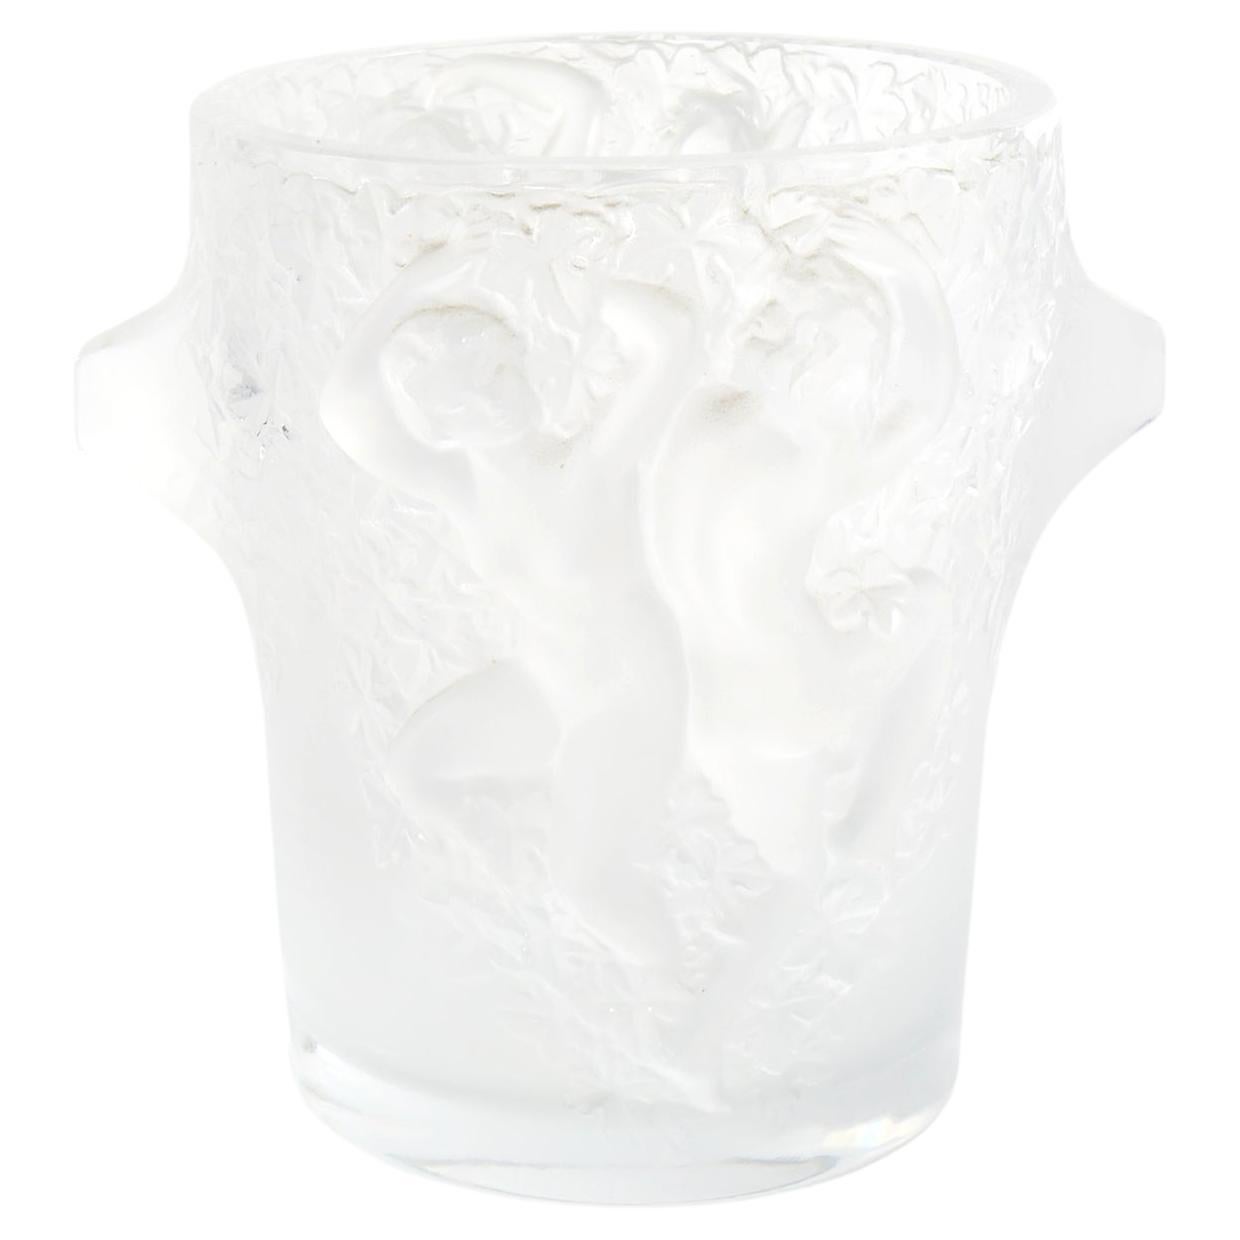 Lalique Crystal Barware / Tableware Cooler